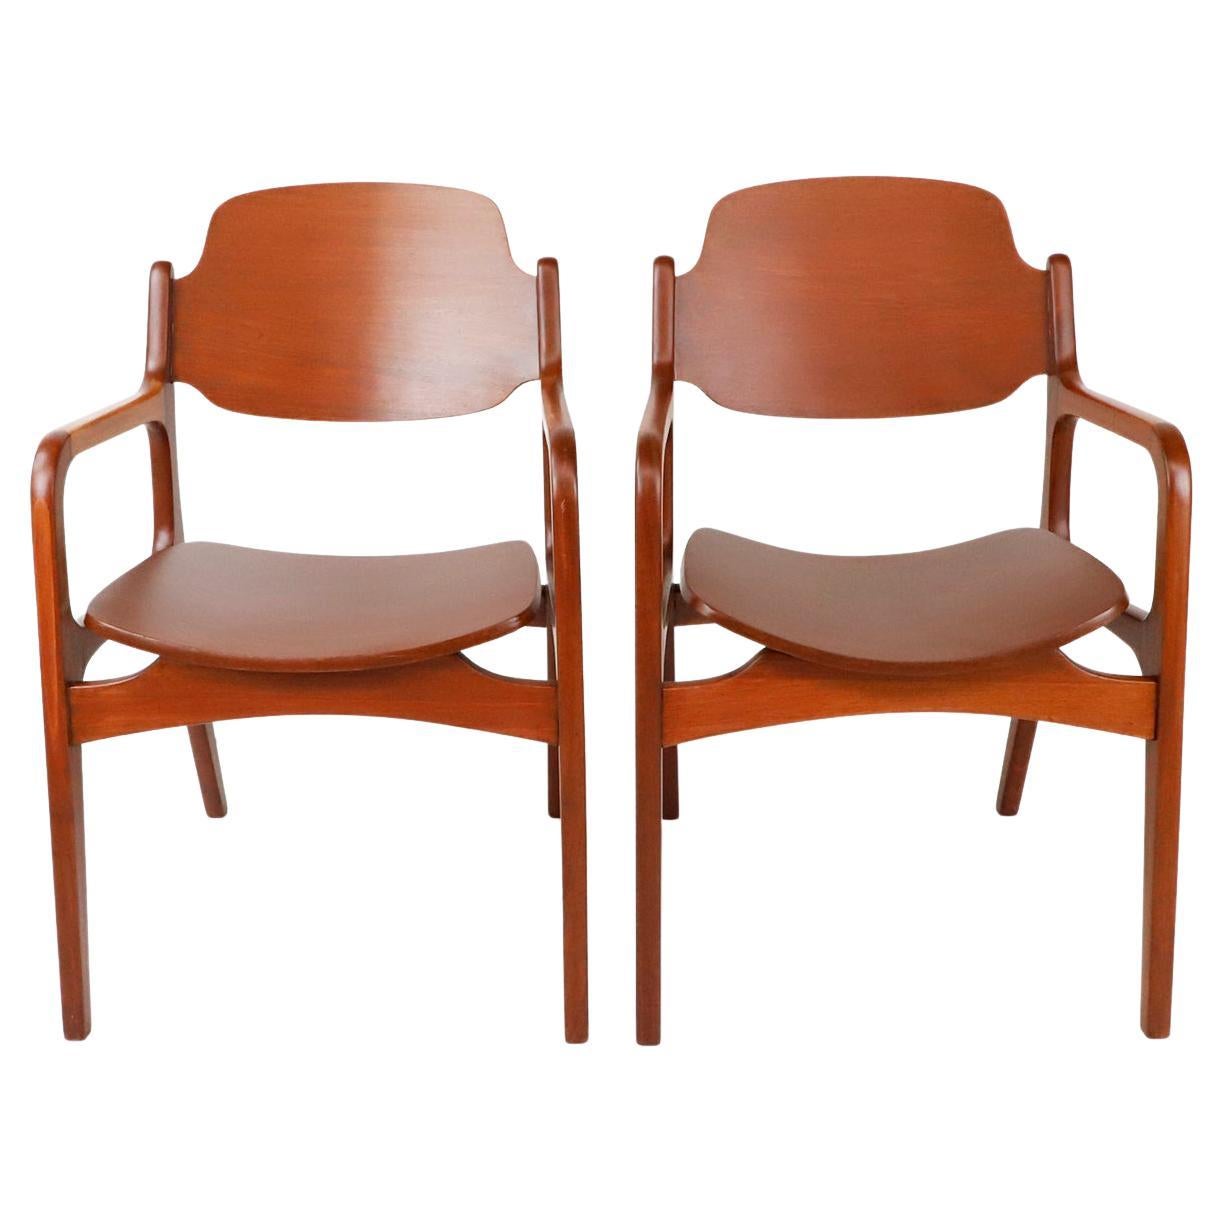 Set of Two Chairs by Michael Van Beuren